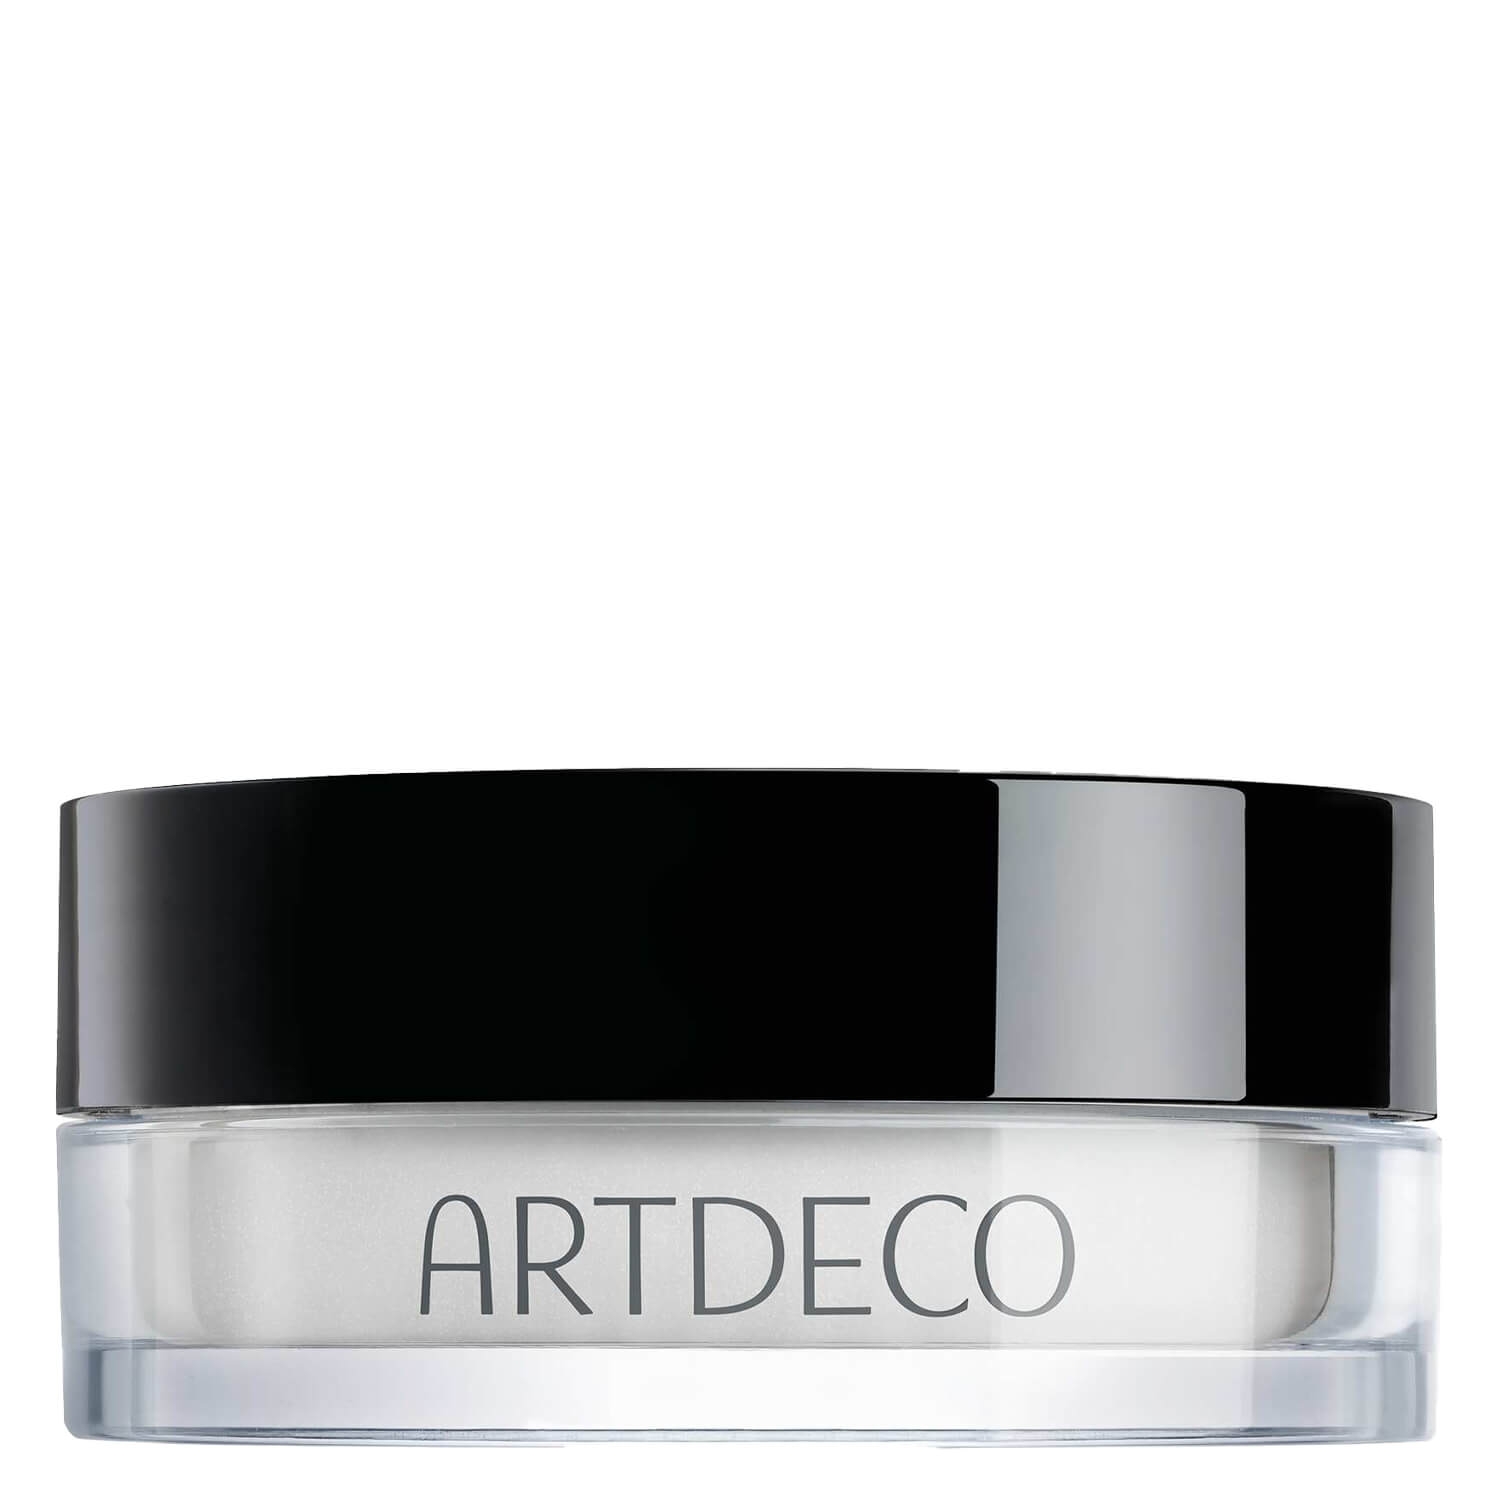 Produktbild von Artdeco Teint - Eye Brightening Powder Sheer Brightener 01